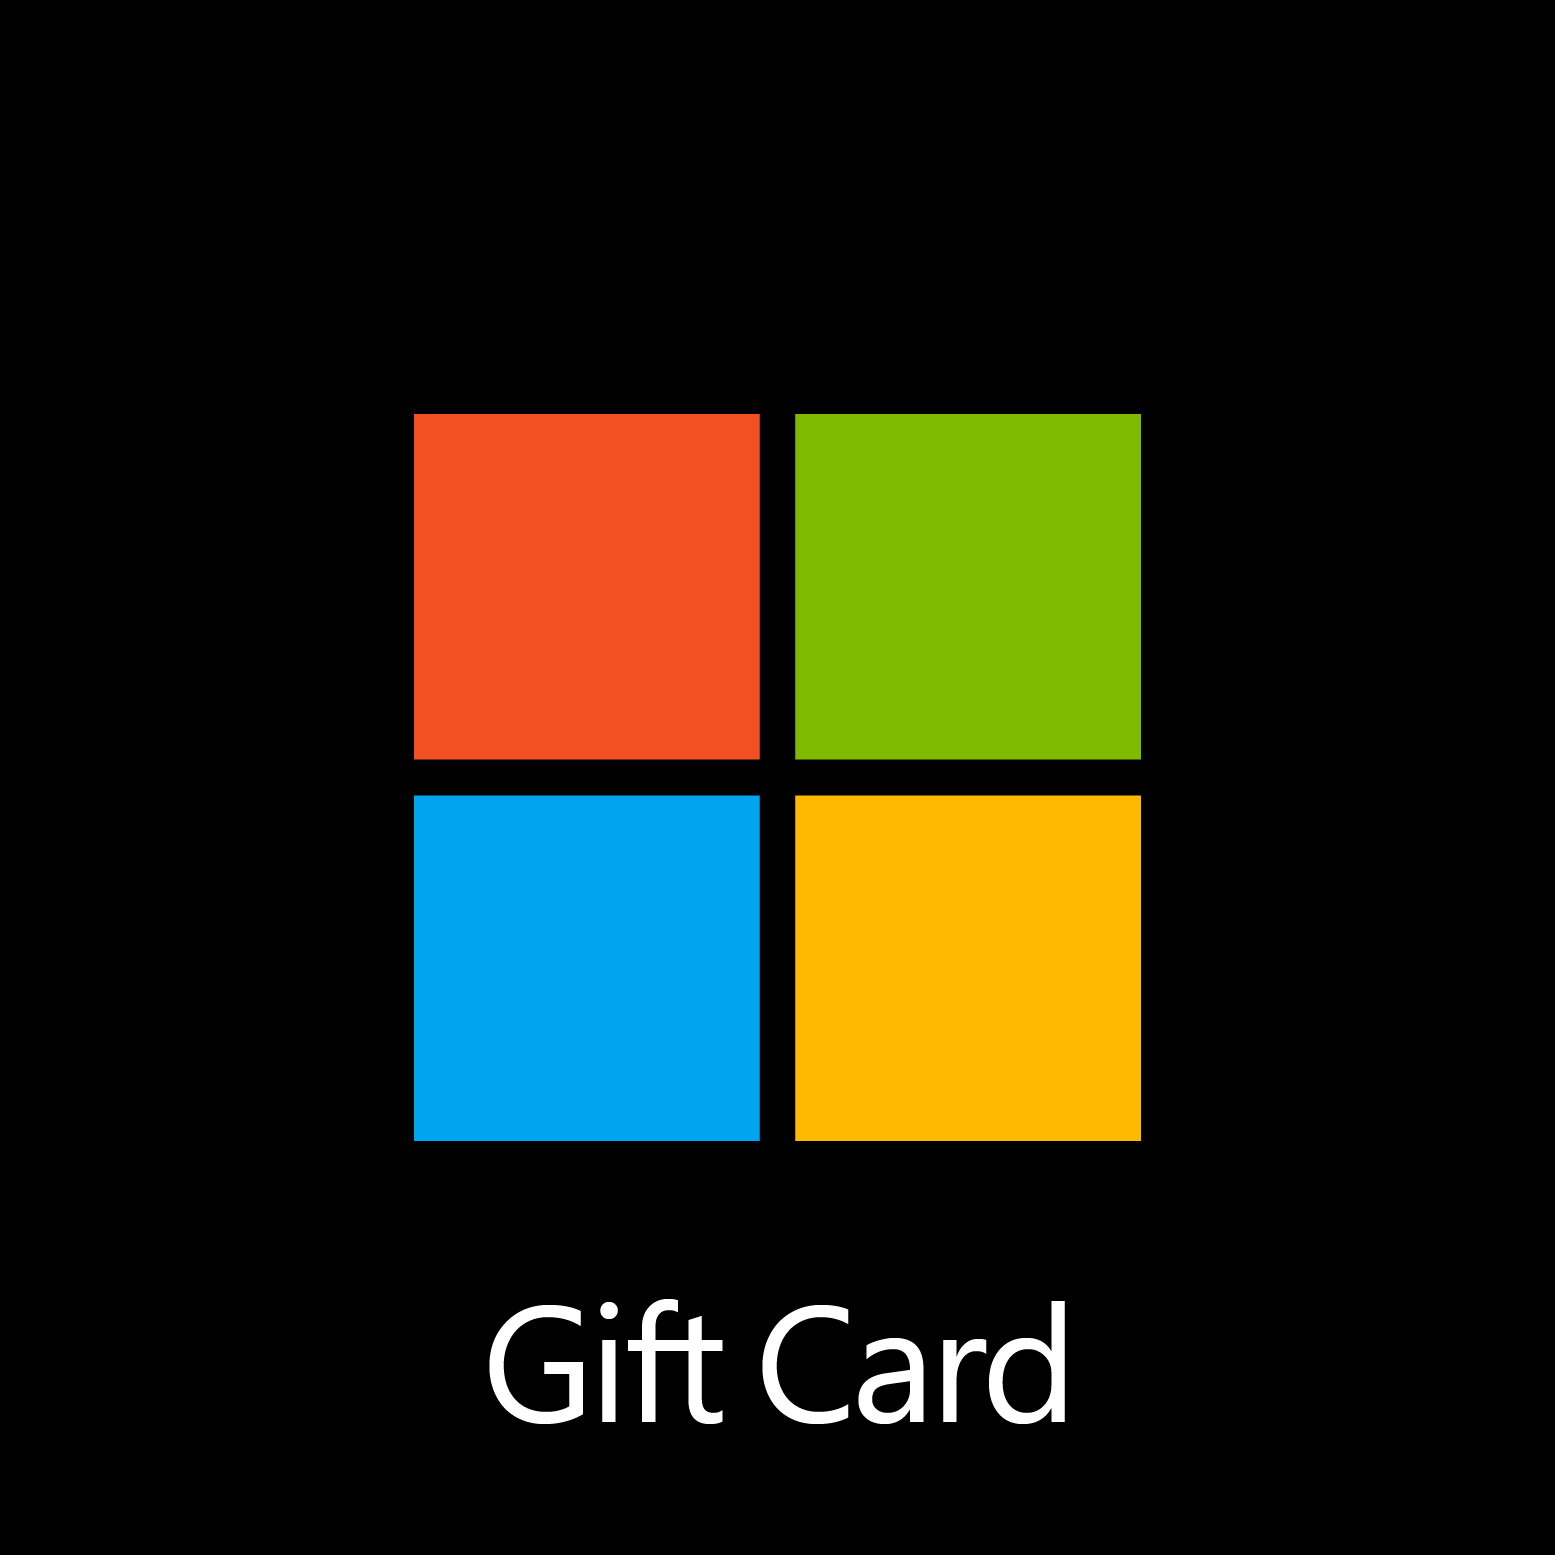 Microsoft Gift Card - Digital Code: £10.00